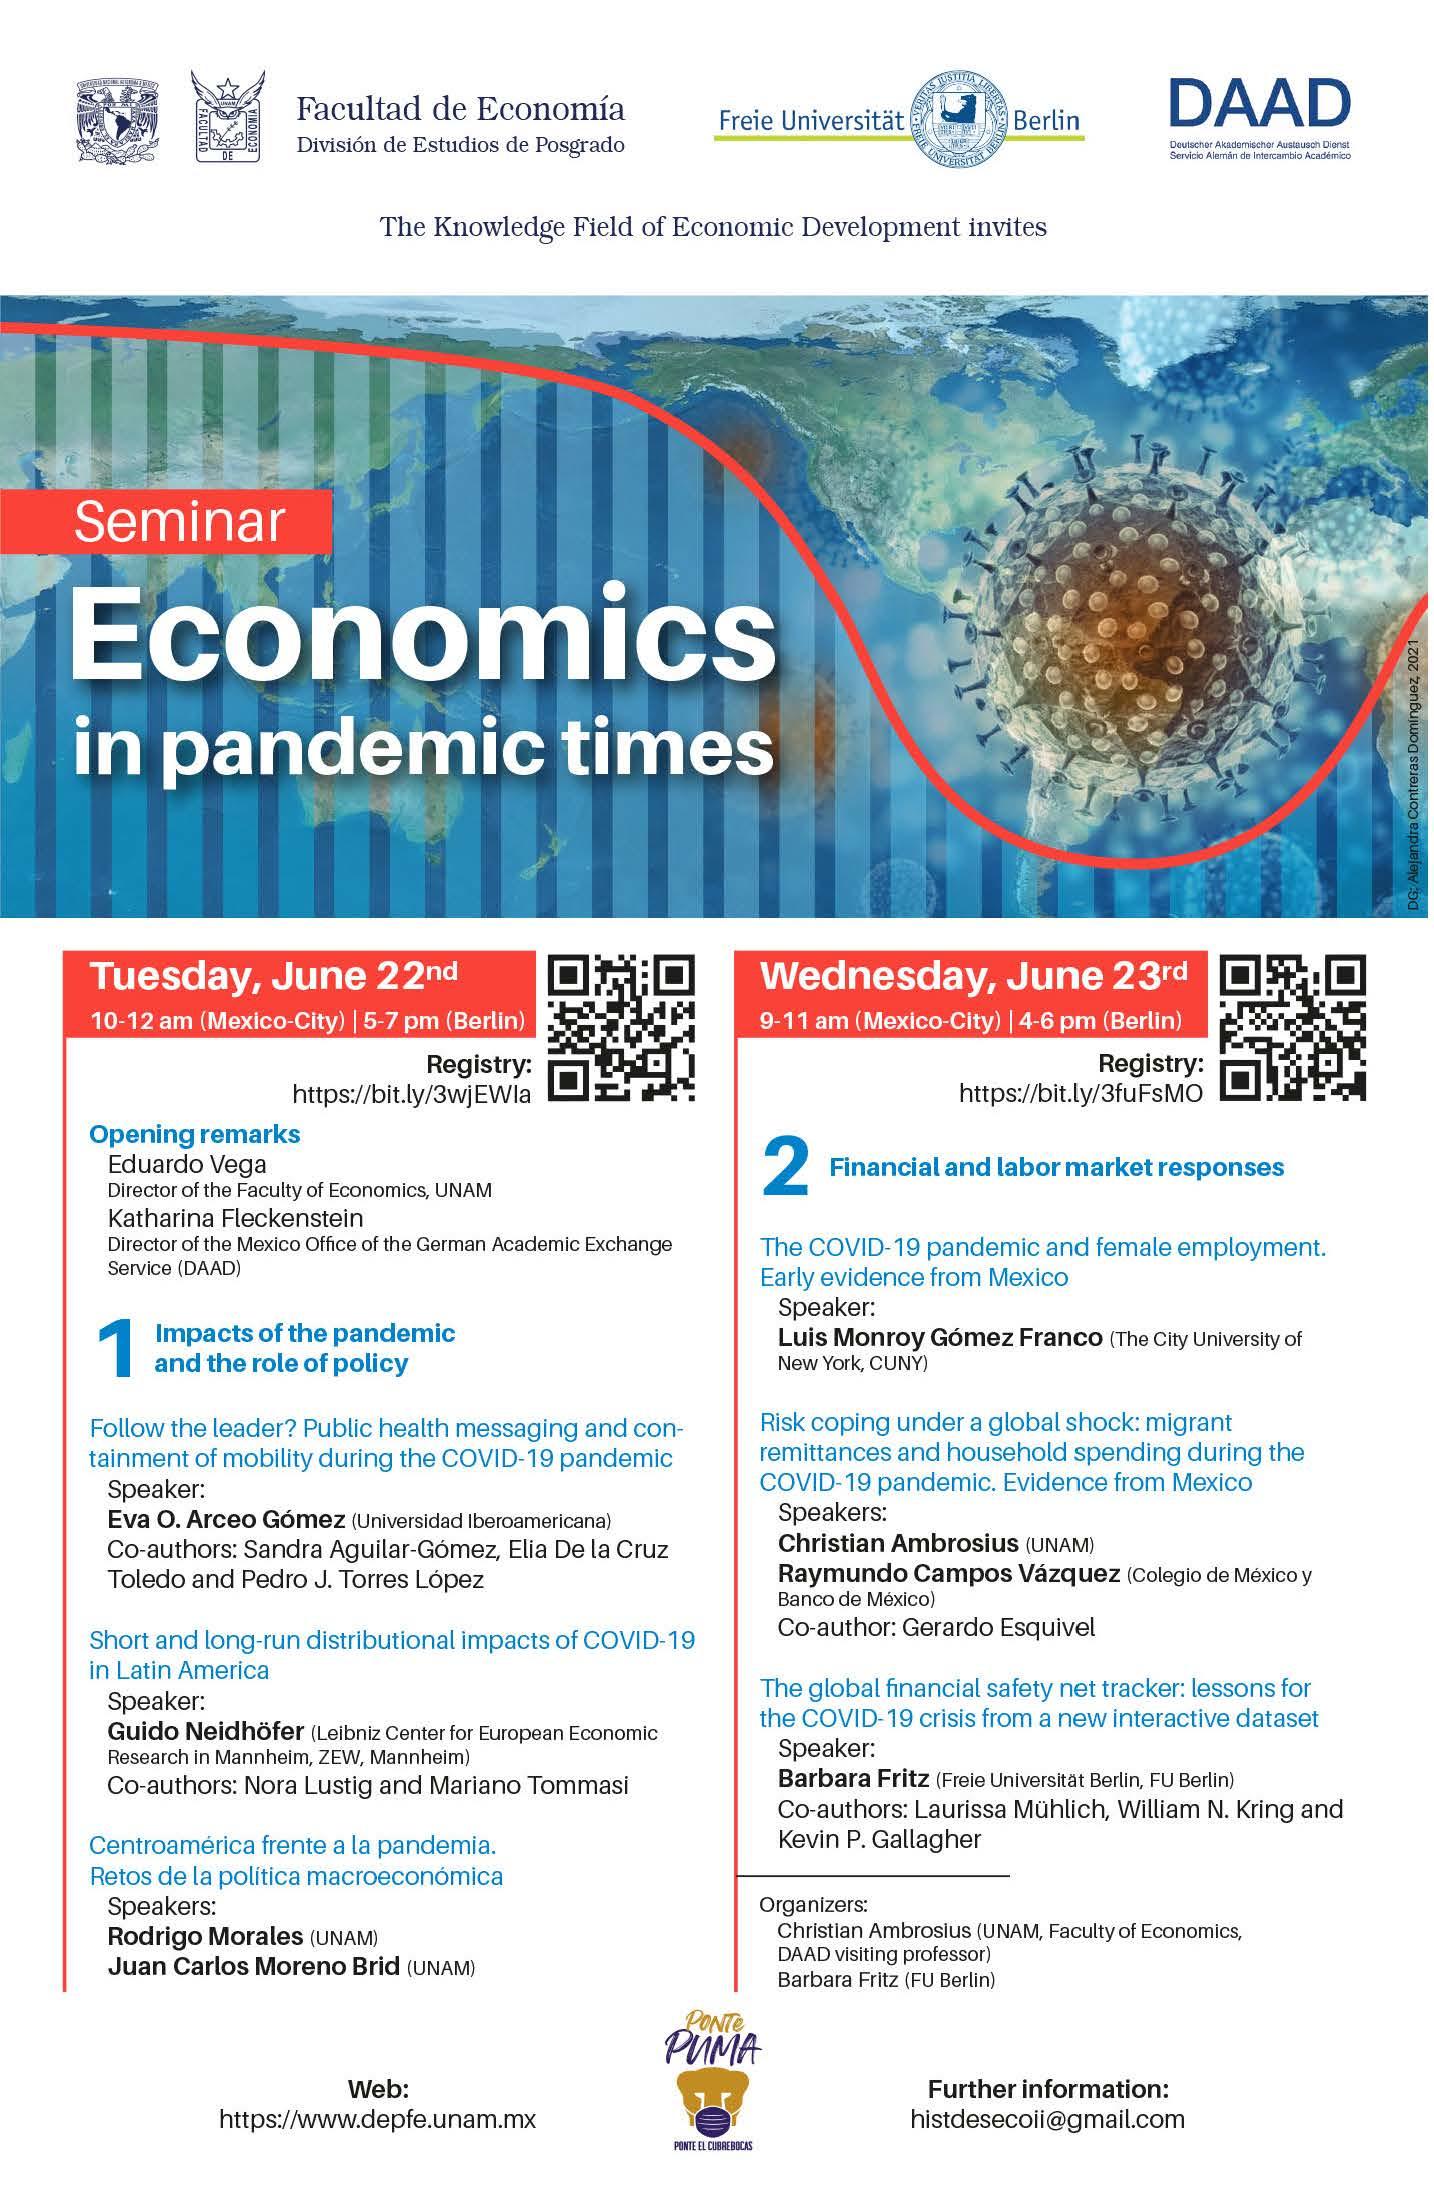 Seminar Economics in Pandemic Times